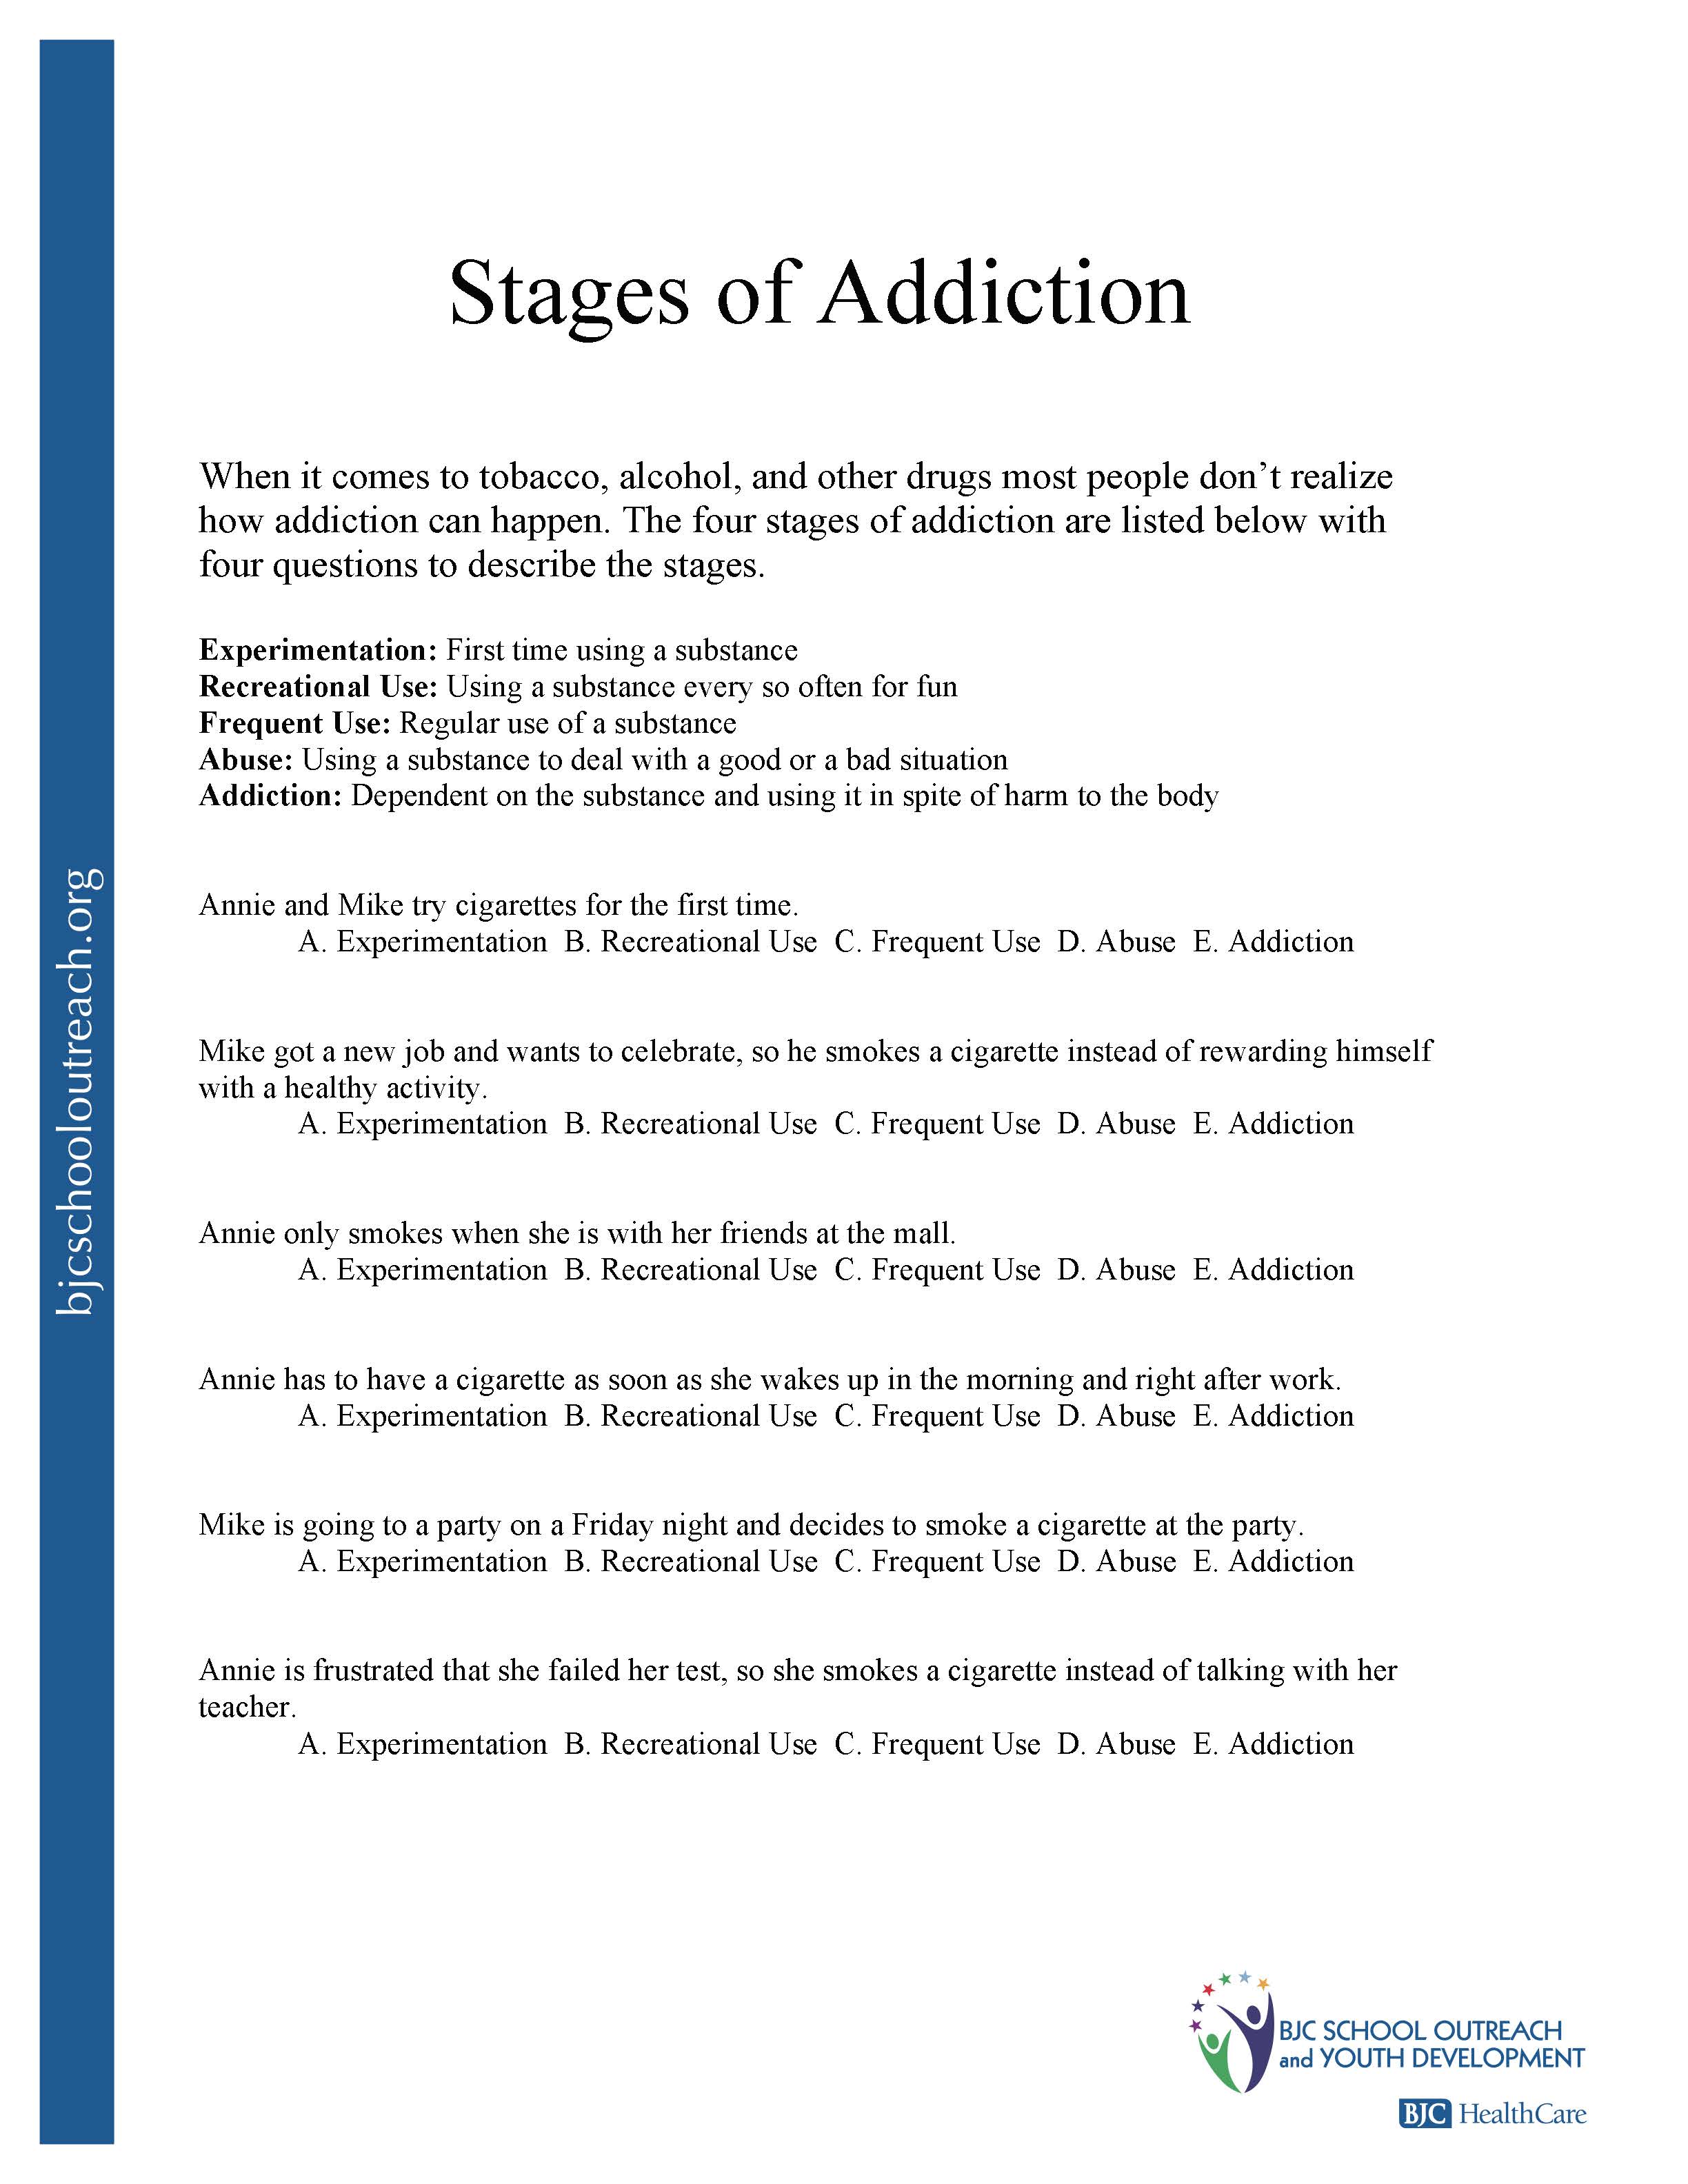 Drug abuse vs drug addiction